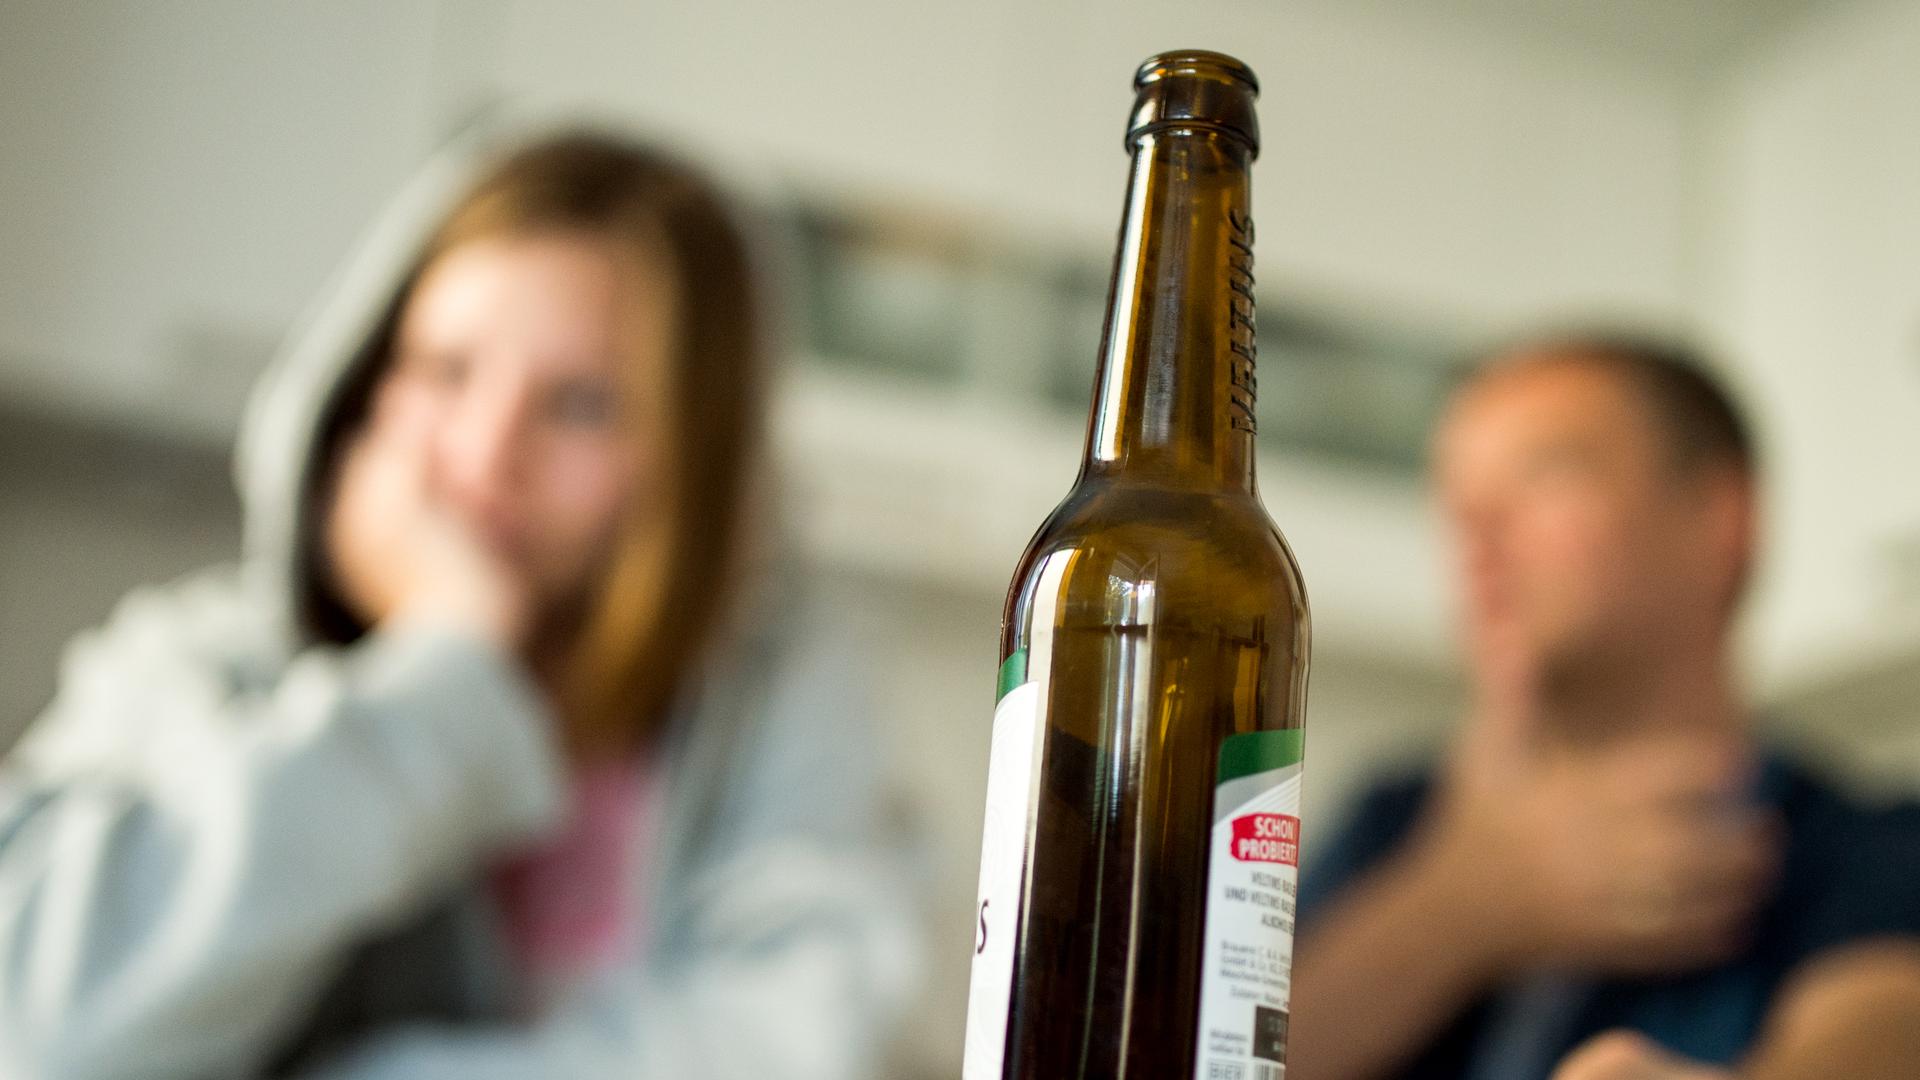 Weg von der Flasche: Was passiert mit mir, wenn ich aufhöre zu trinken? Davor haben viele Menschen Angst, die überlegen, ob und wie sie gegen ihre Alkoholsucht vorgehen wollen. Ein Therapieangebot „zum Ausprobieren“ soll helfen.